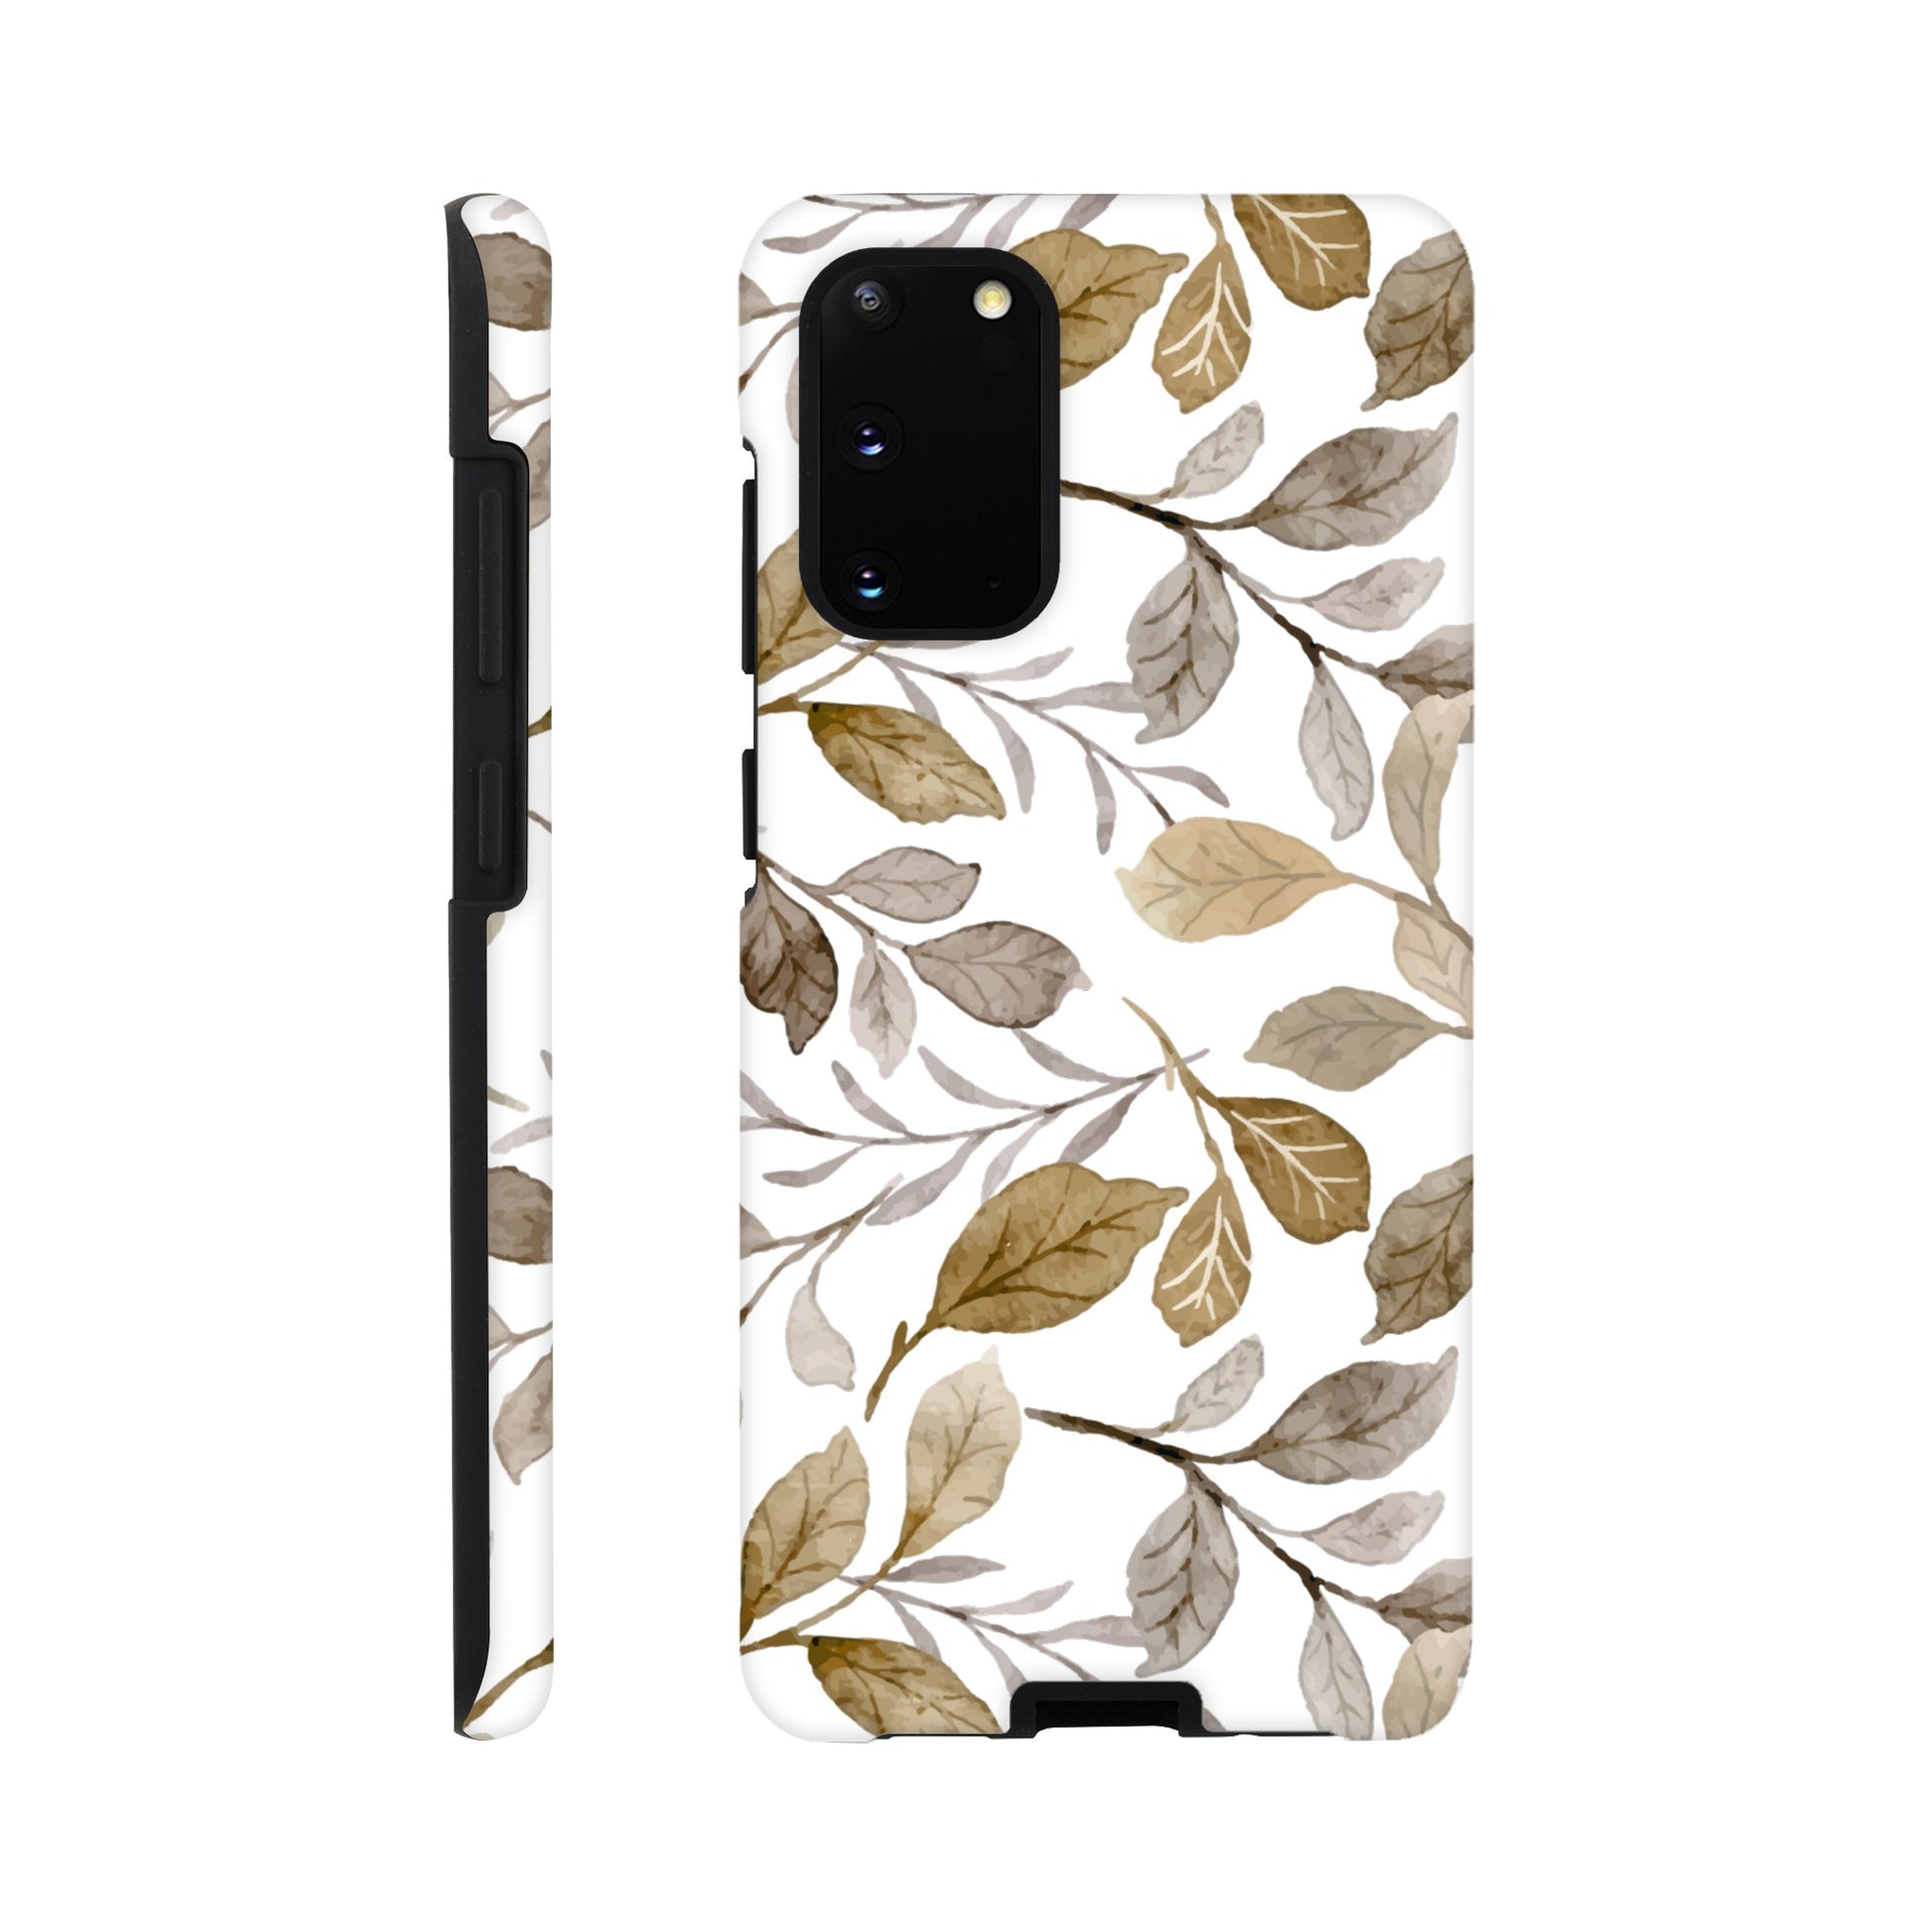 Autumn Leaves - Phone Tough Case Galaxy S20 Phone Case Plants